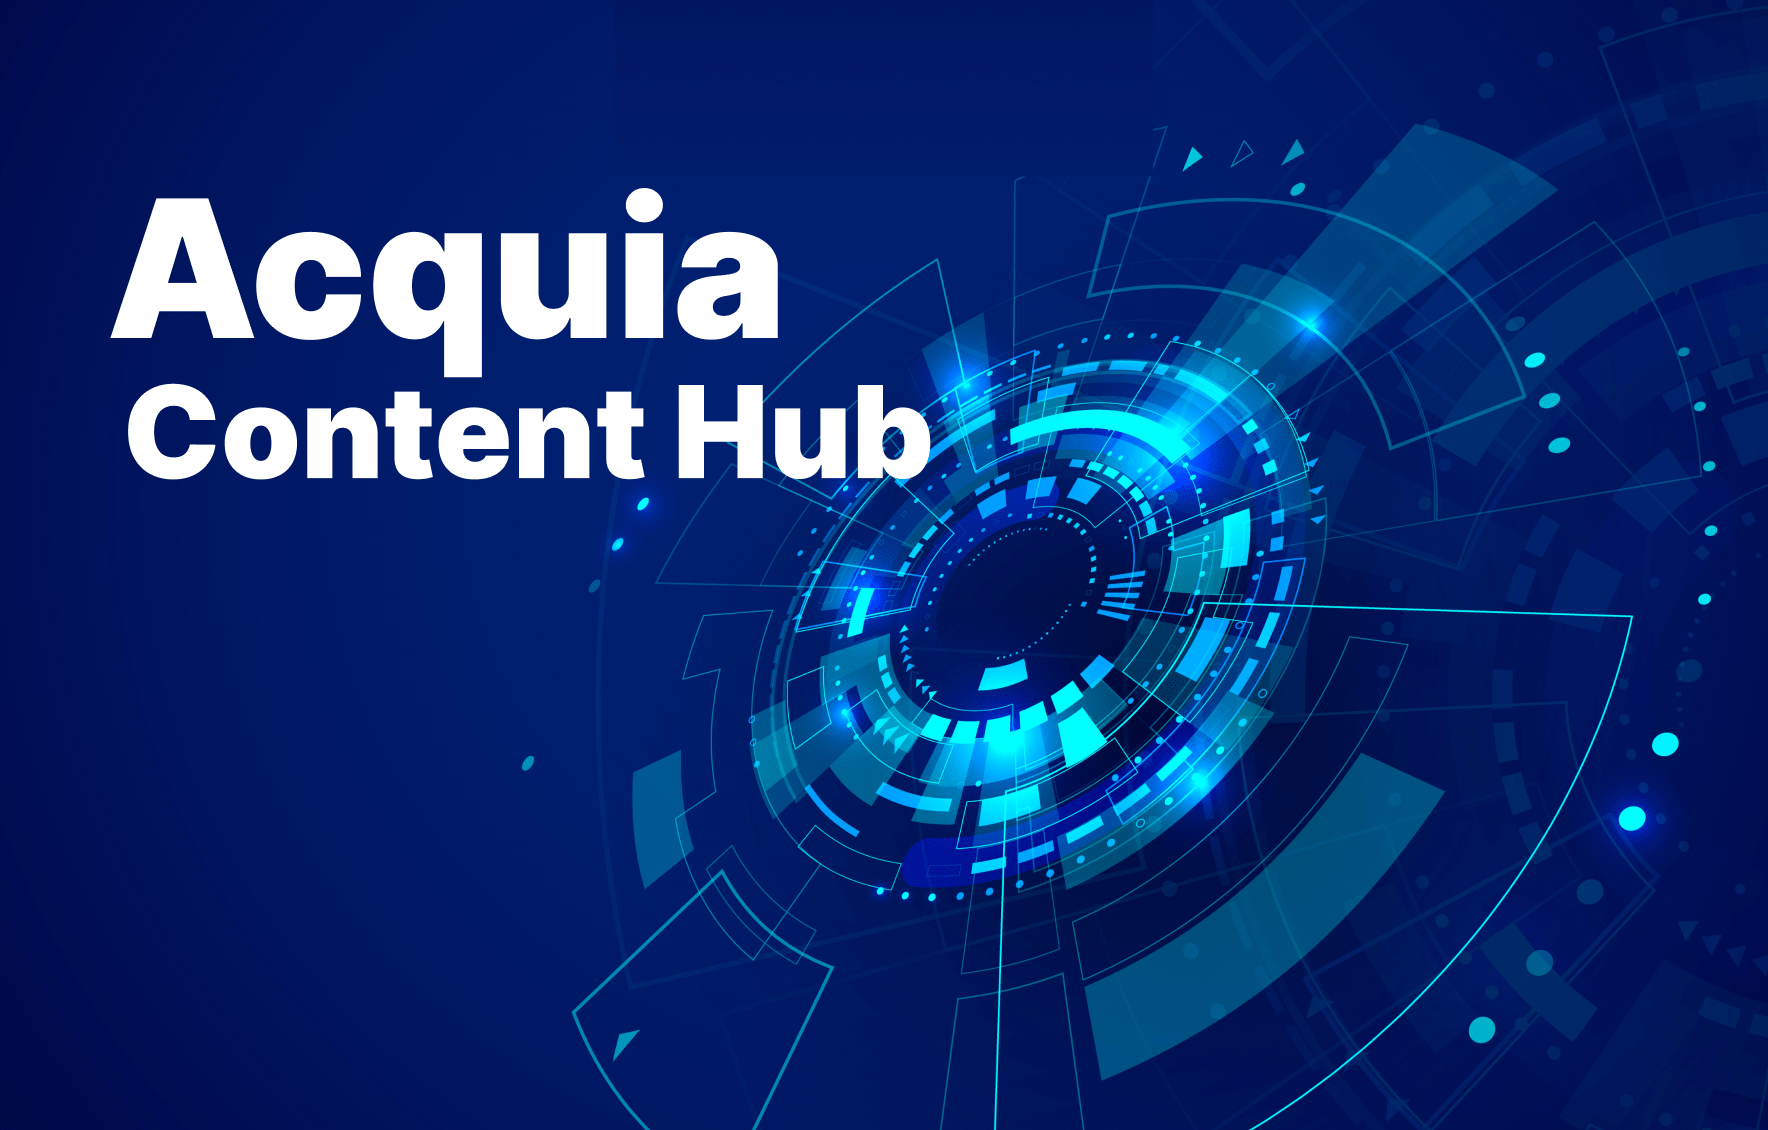 Acquia Content Hub image